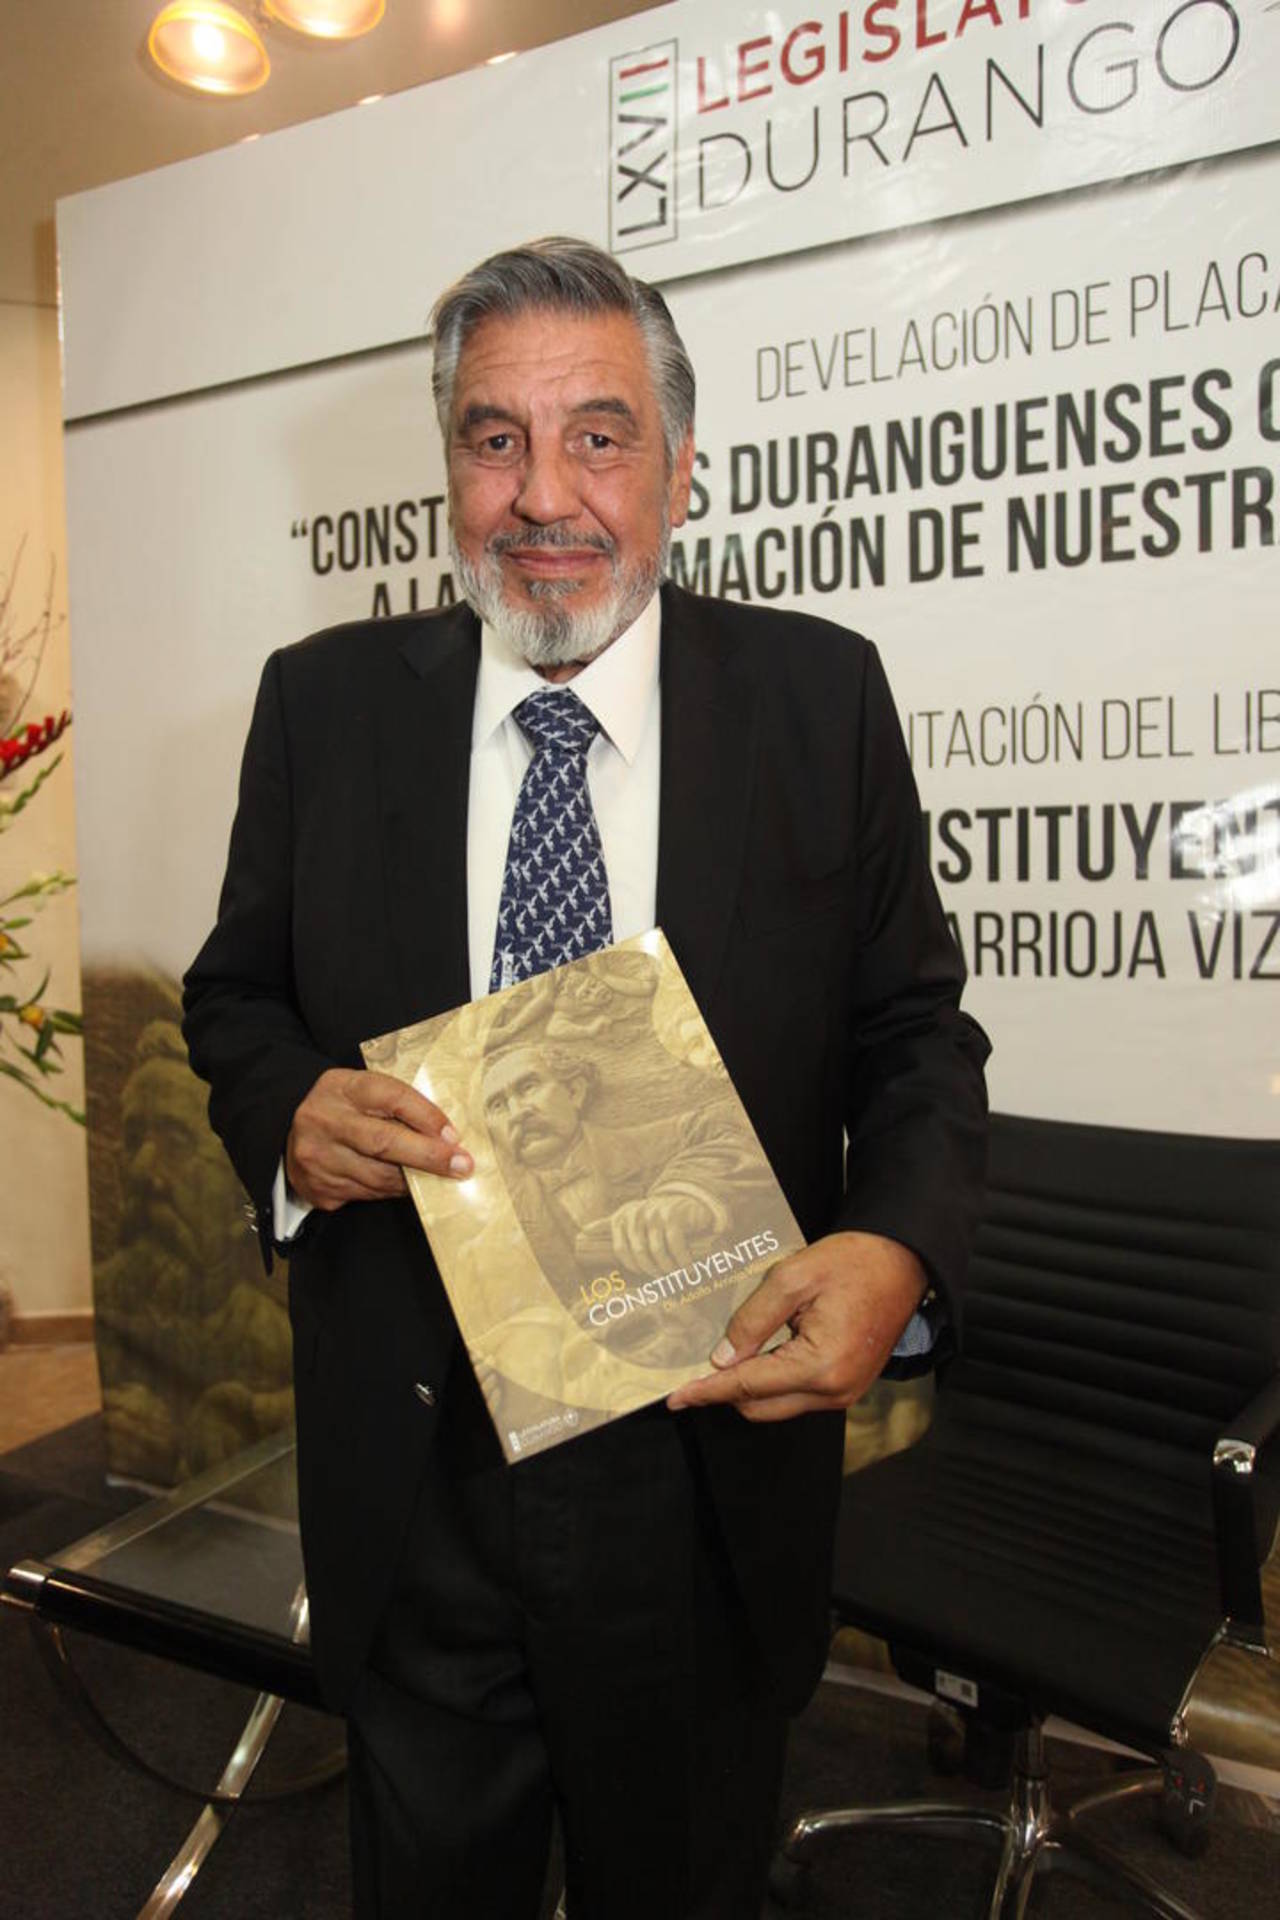 Abierta. La presentación del libro de Adolfo Arrioja Vizcaíno, es abierta al público en general en la Casa de la Cultura.